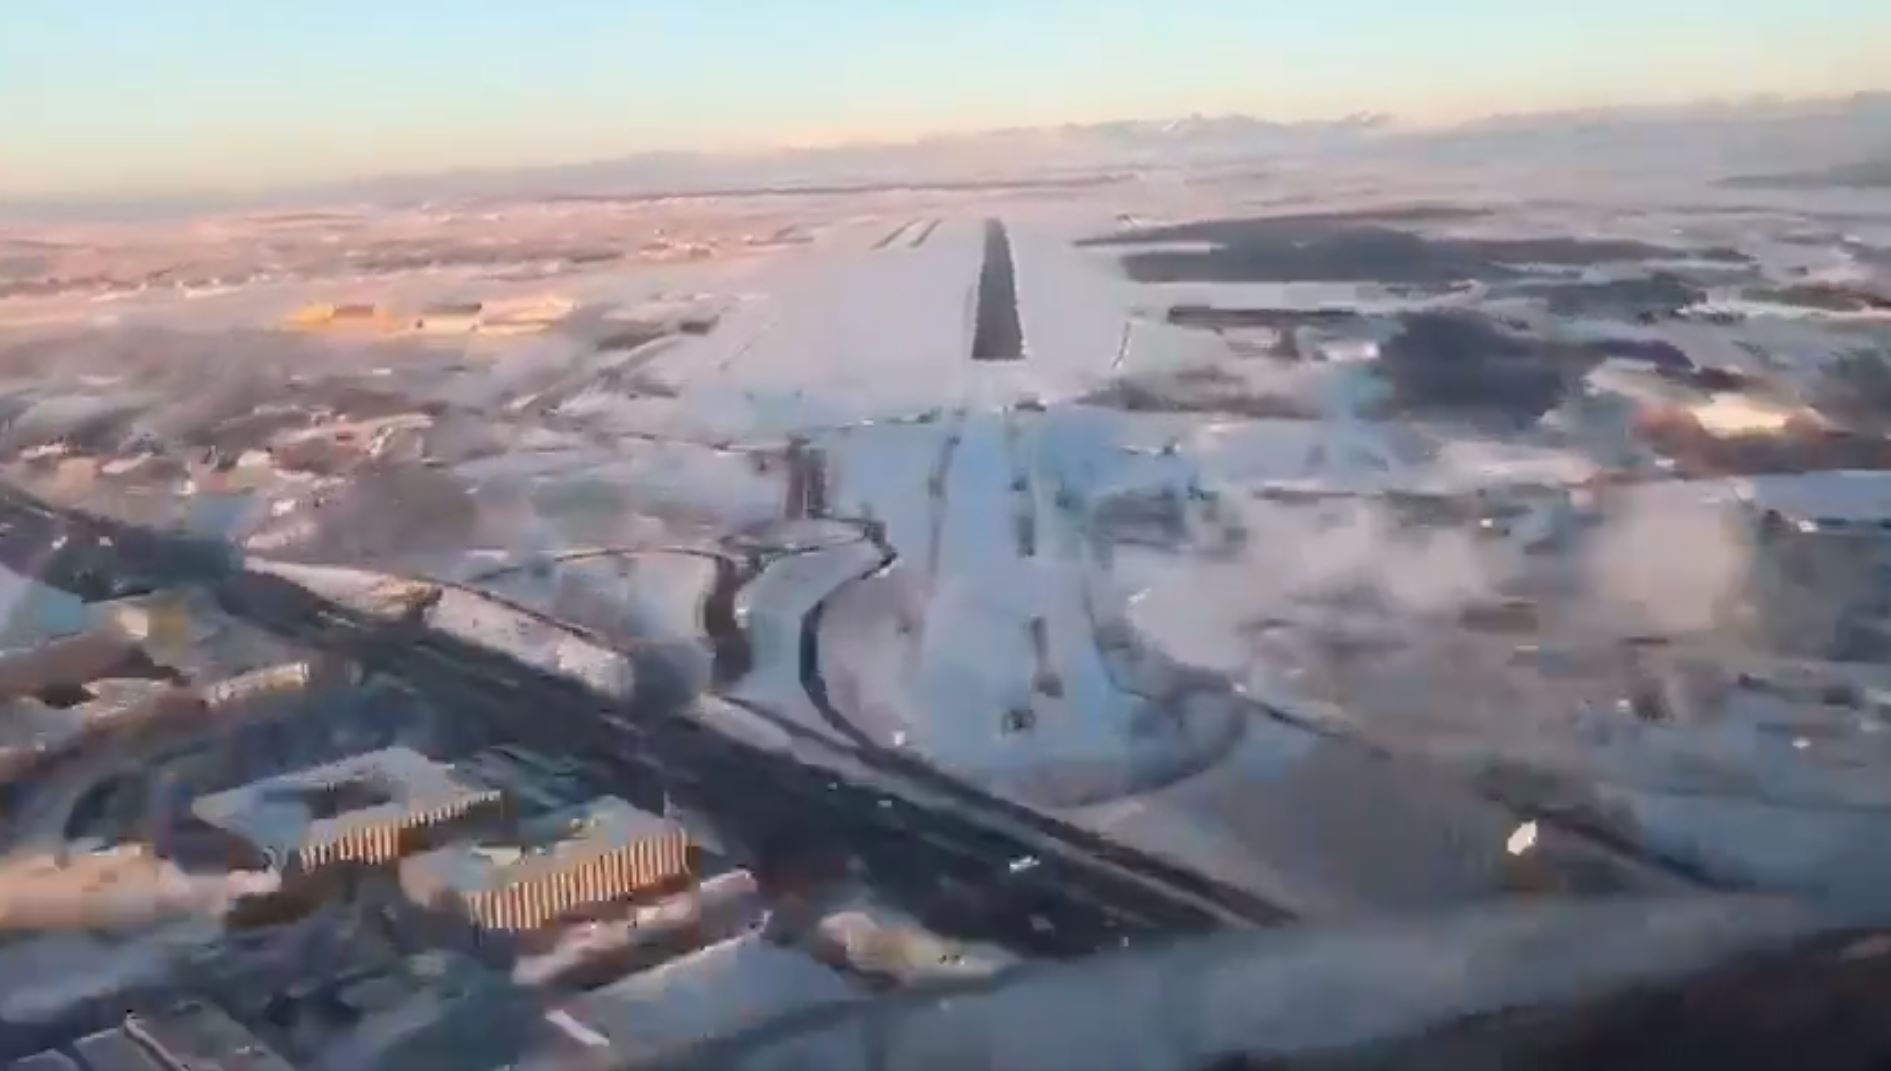 Aterrizaje de un avión, captado desde la cabina, en el Aeropuerto Madrid Barajas Adolfo Suárez, luego de la gran nevada. (Foto Prensa Libre: Controladores Aéreos)